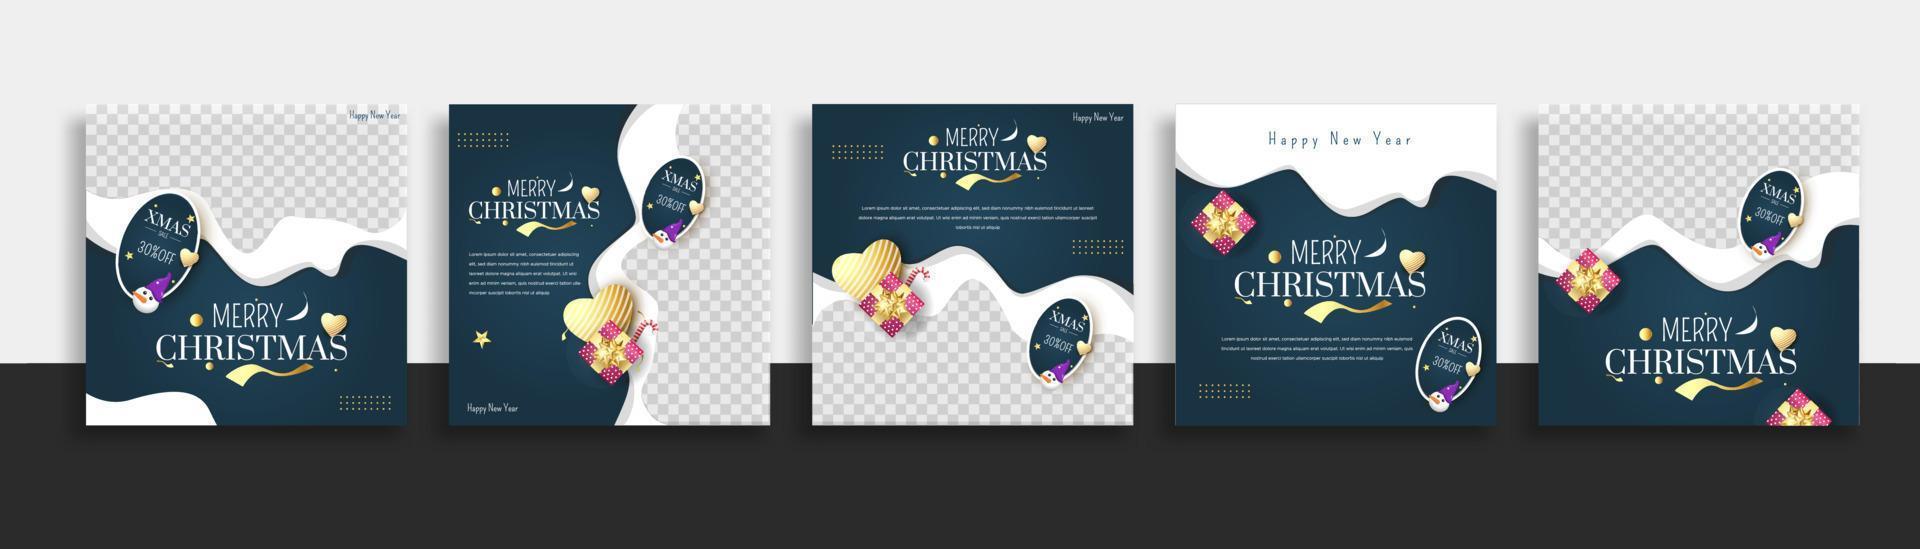 conjunto de banner web de plantilla de publicación de redes sociales de navidad para promociones de su producto. vector